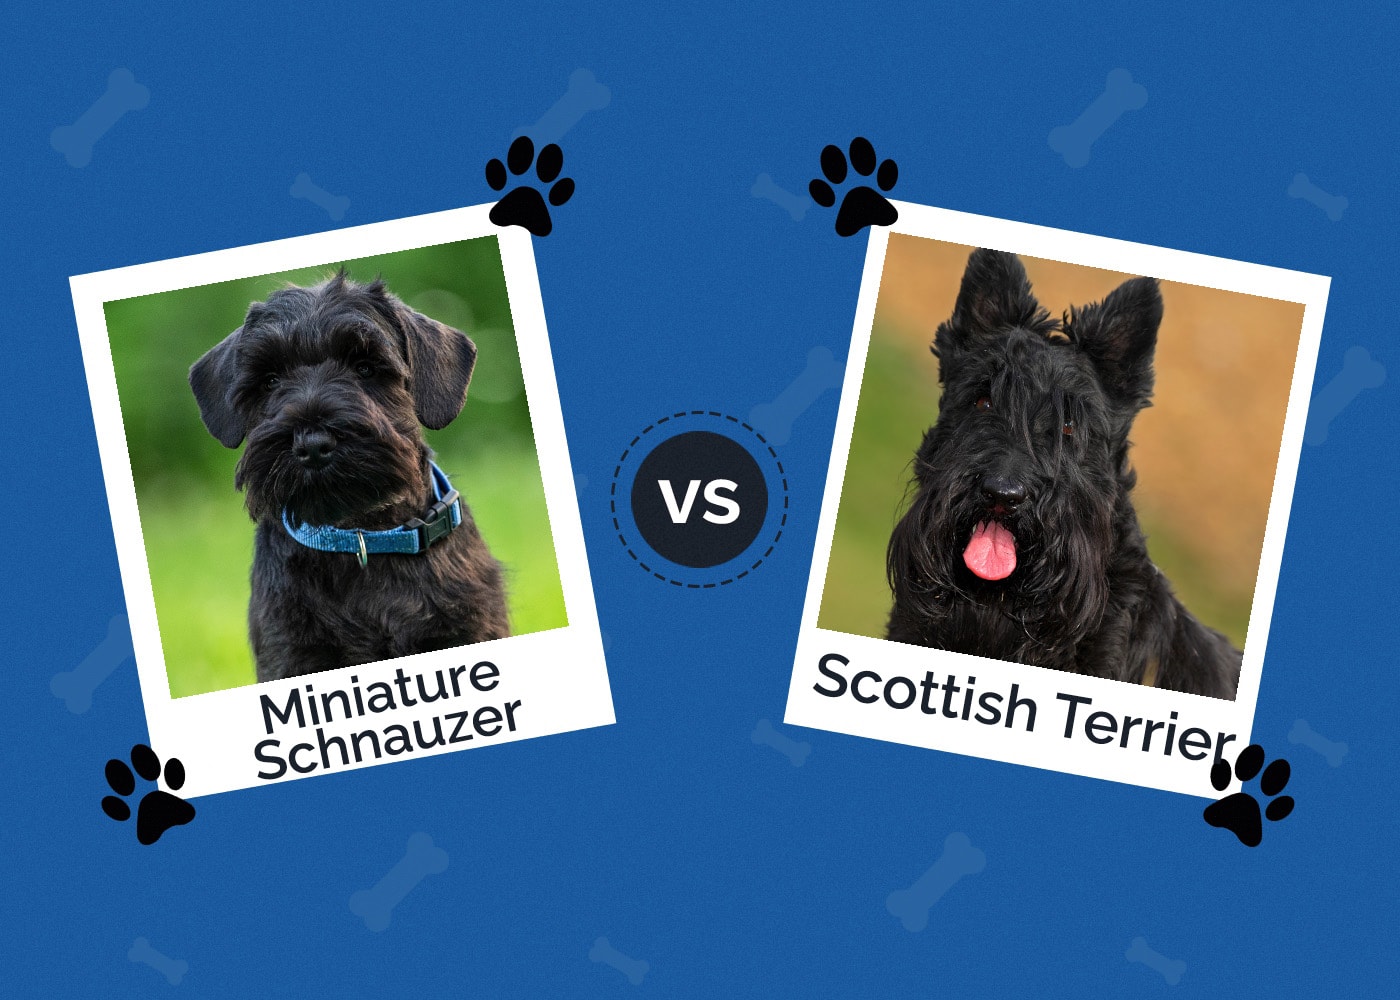 Miniature Schnauzer vs Scottish Terrier